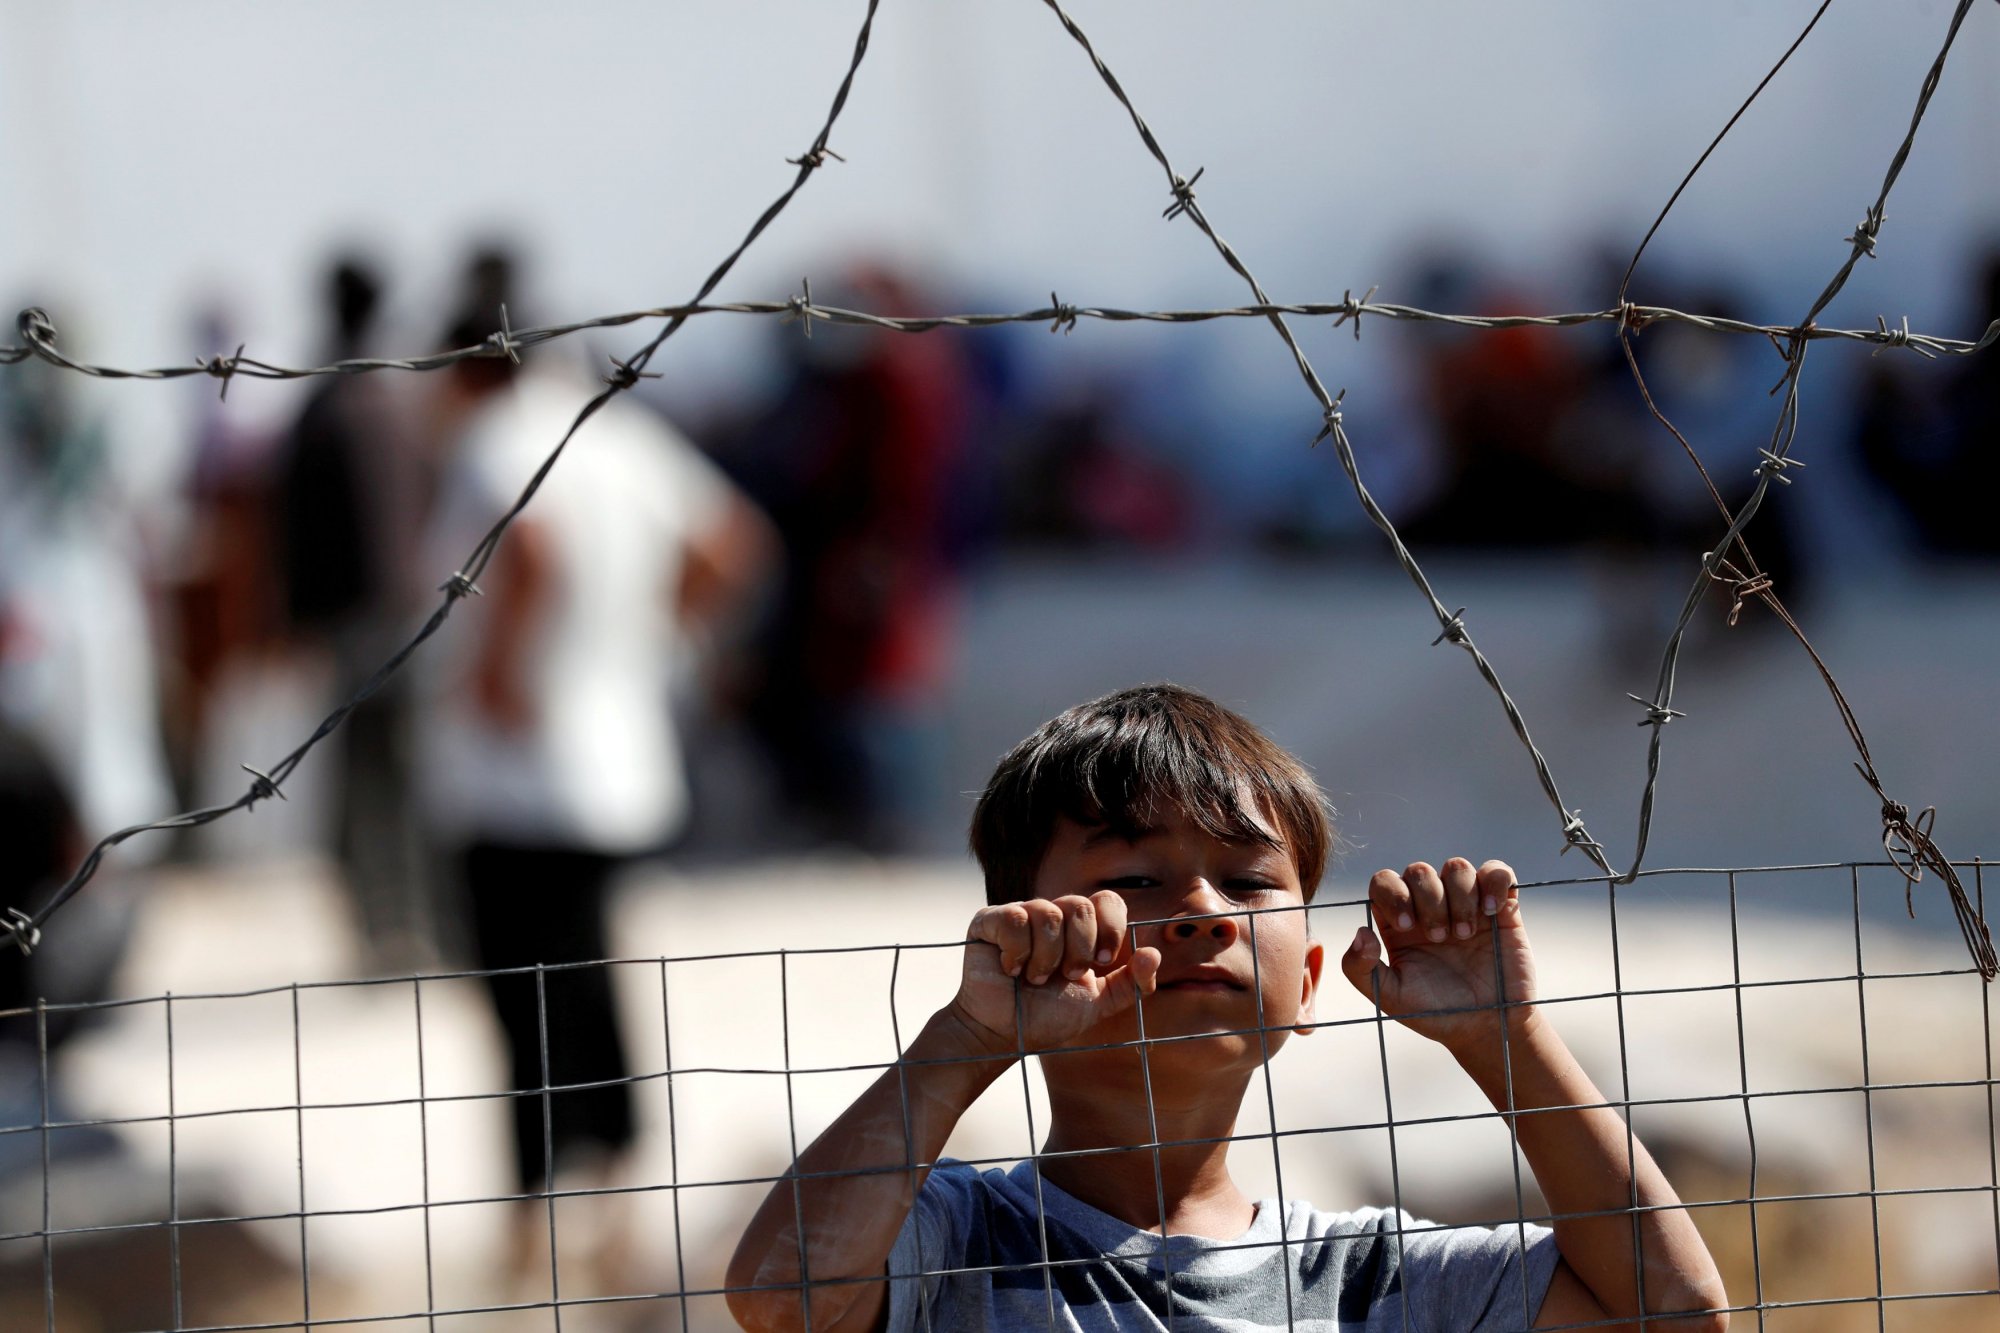 Μαργαρίτης Σχοινάς στο ΒΗΜΑ: Θέμα εβδομάδων το Σύμφωνο για το Μεταναστευτικό και το Άσυλο